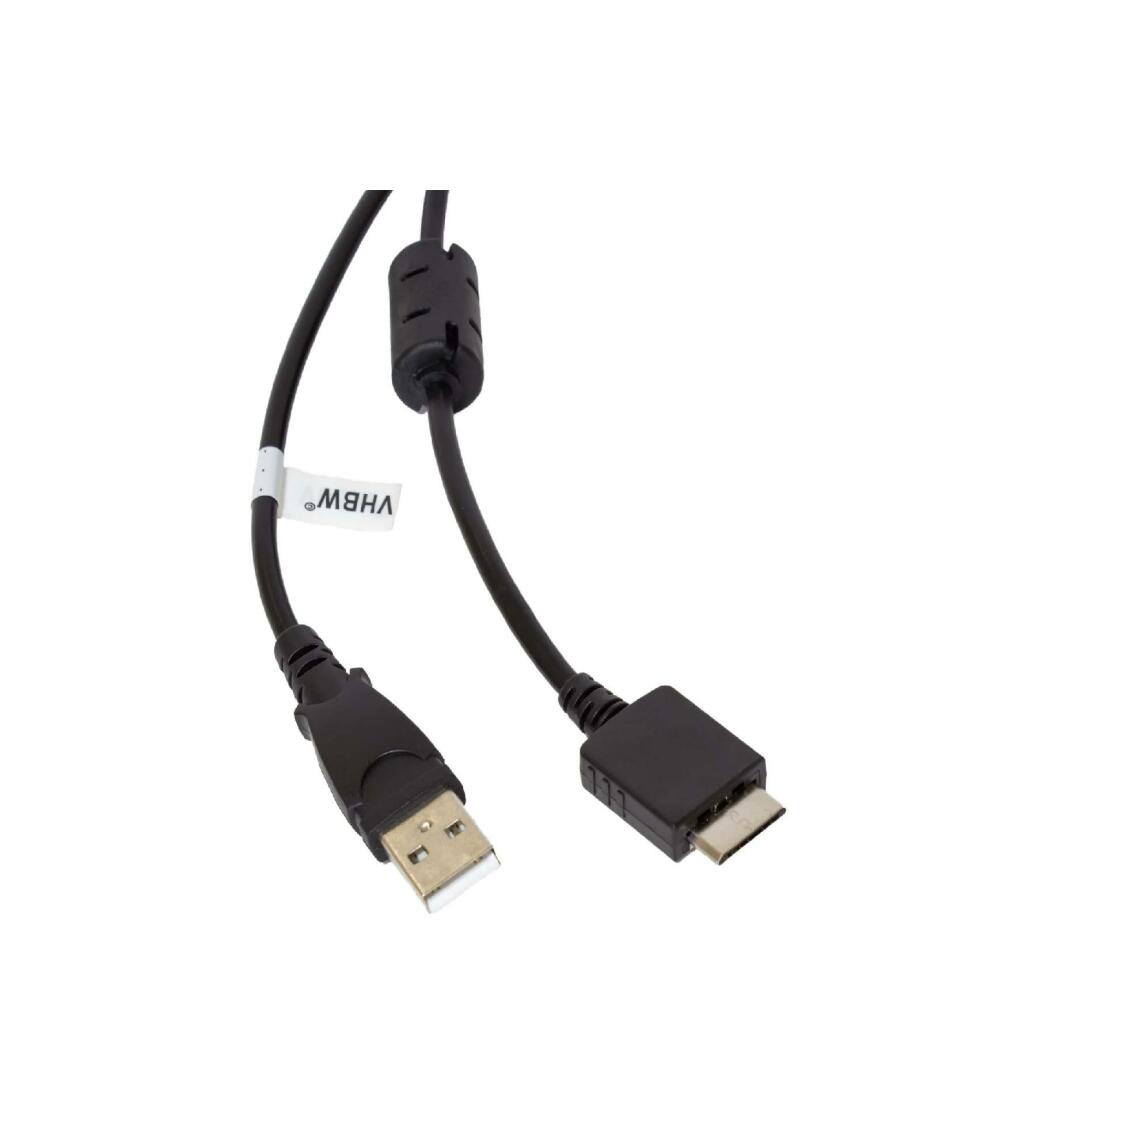 Vhbw - vhbw câble de données USB (type A sur lecteur MP3) câble de chargement compatible avec Sony Walkman NWZ-S639F, NWZ-S710F lecteur MP3 - noir, 150cm - Alimentation modulaire